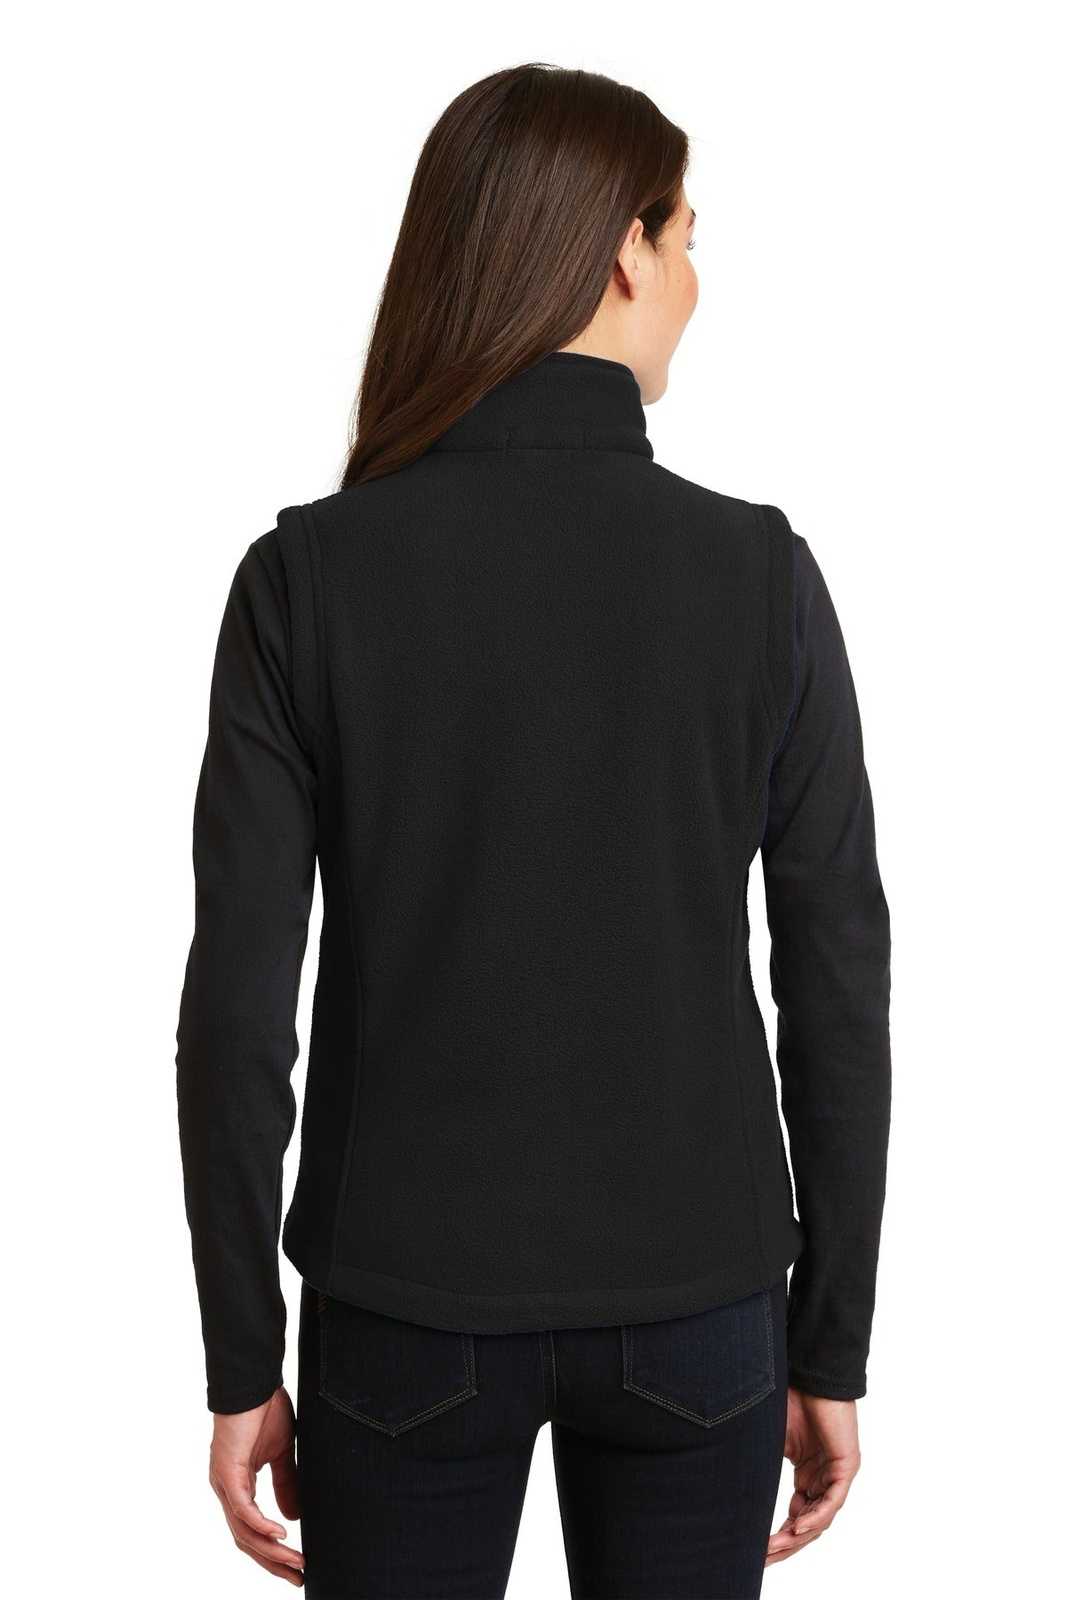 Port Authority L219 Ladies Value Fleece Vest - Black - HIT a Double - 1